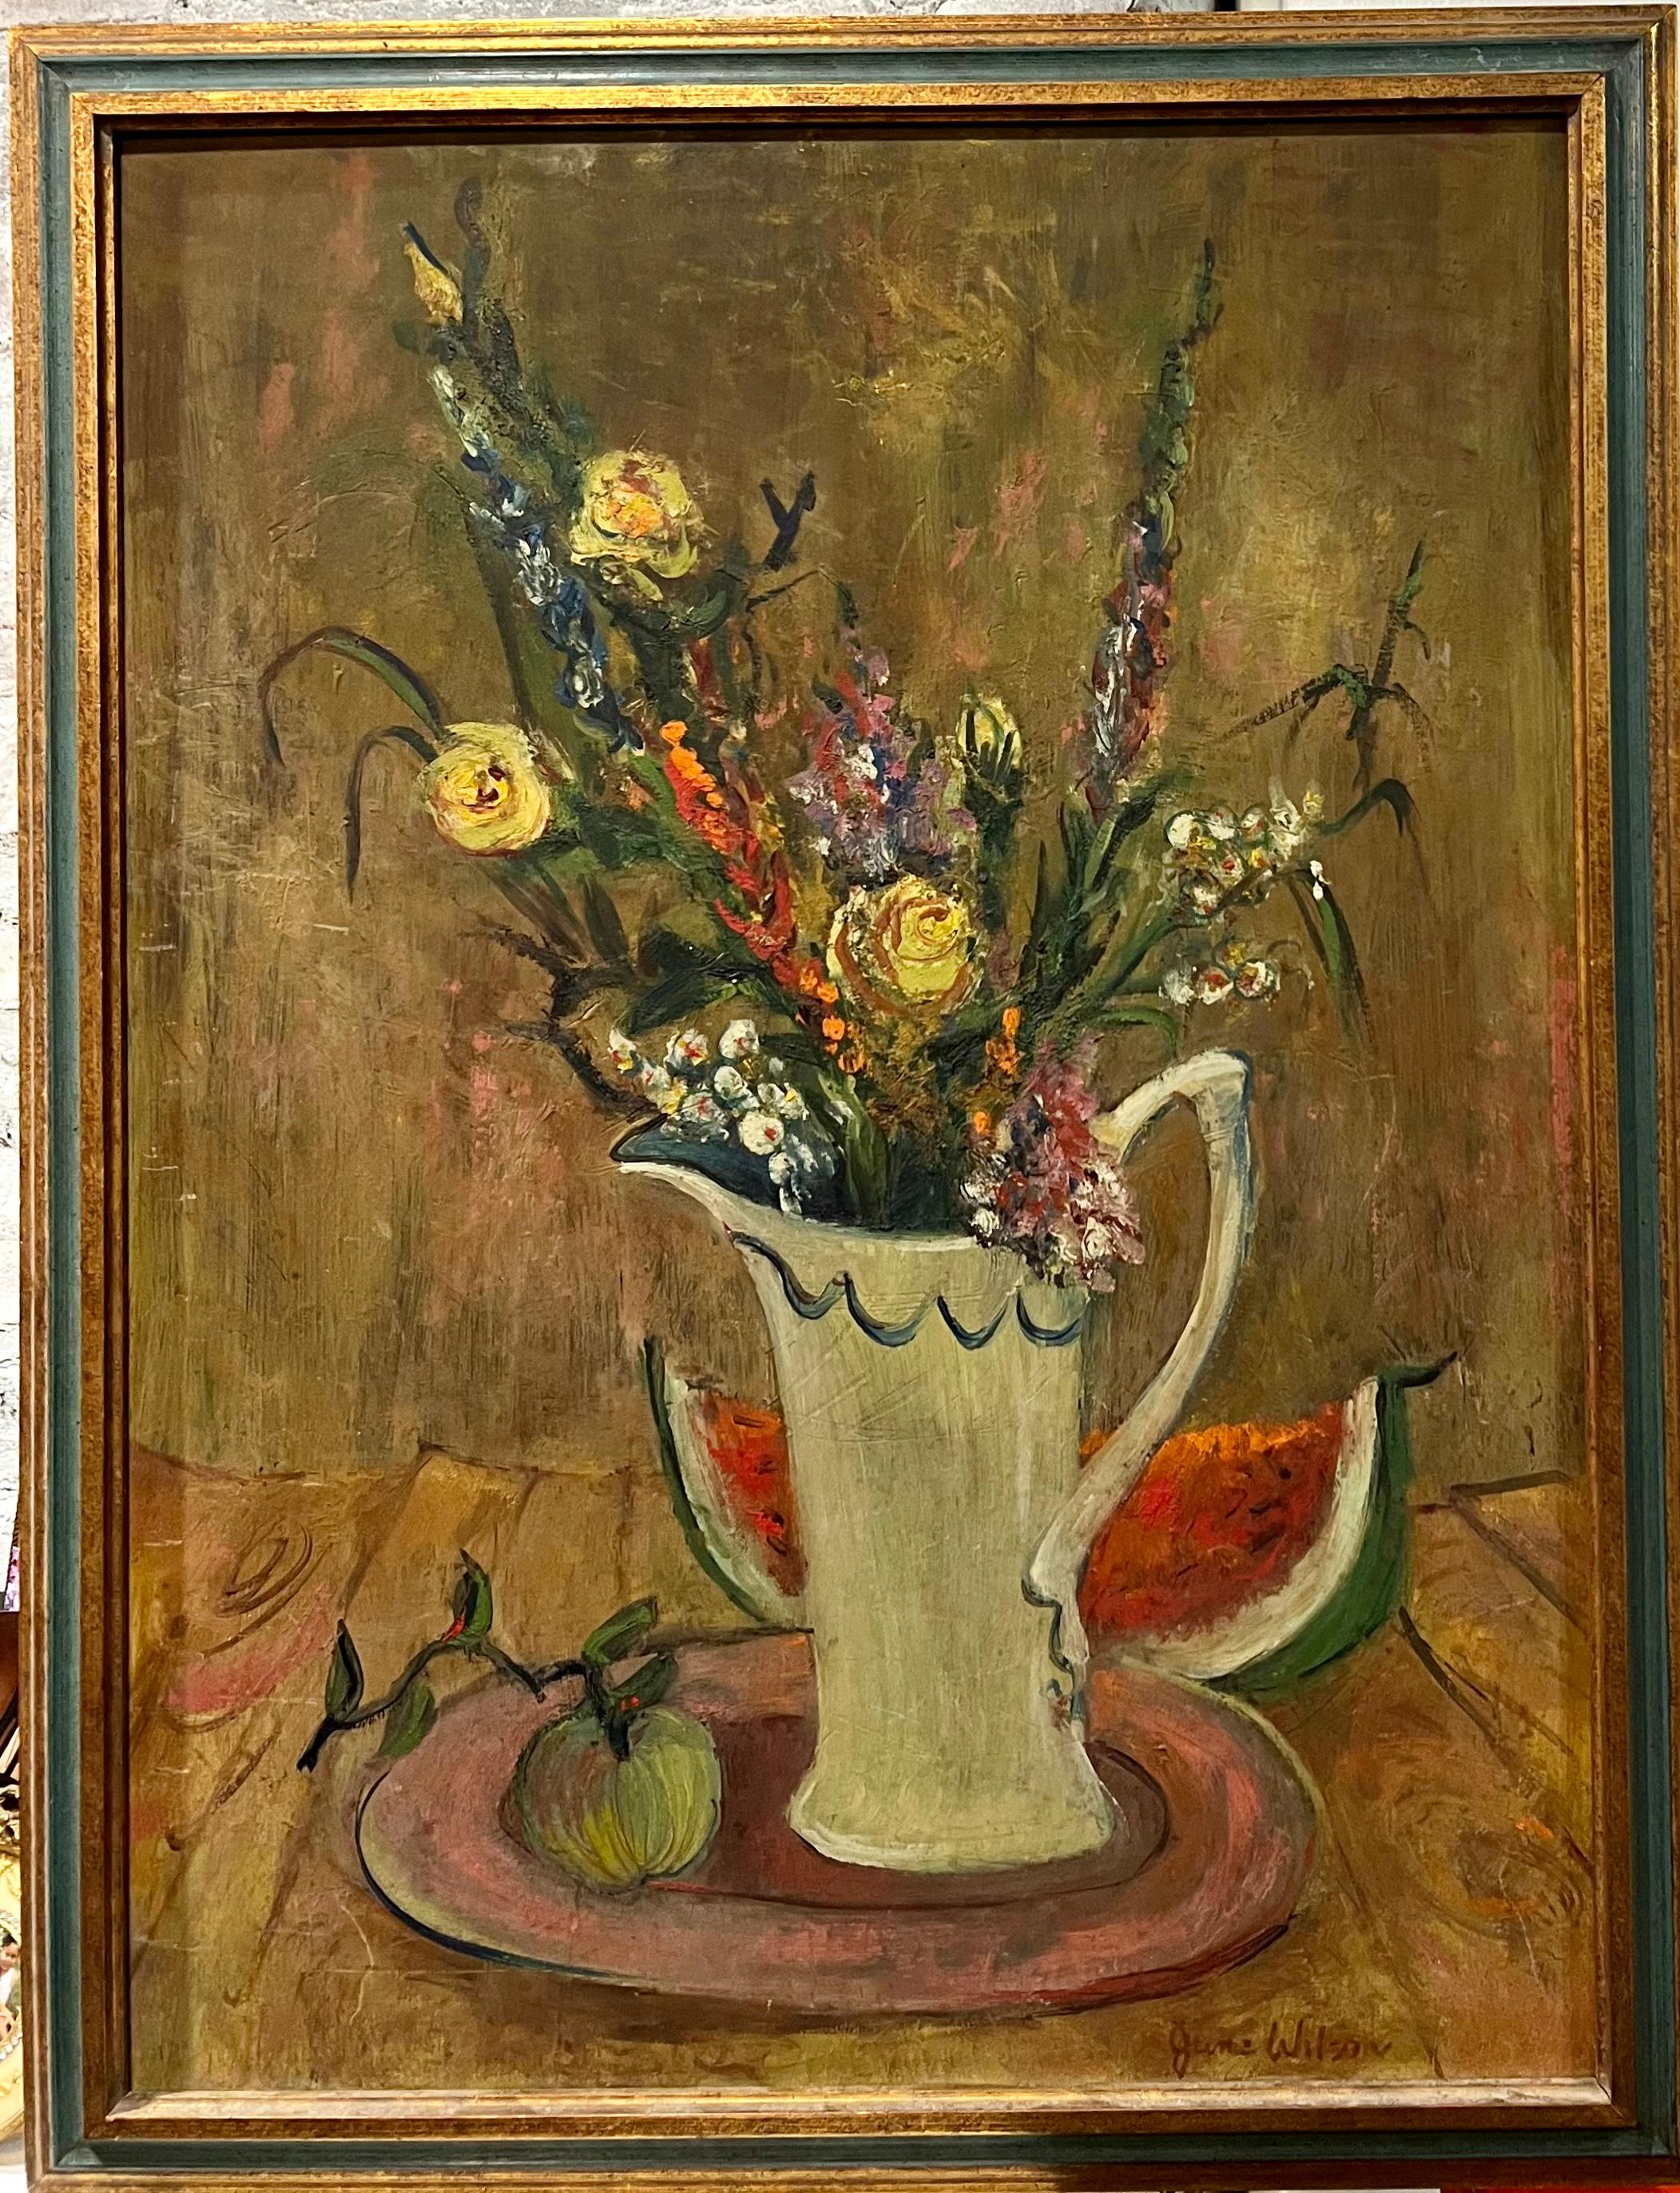 Zum Verkauf steht ein postimpressionistisches Stilleben von Jane Wilson (1924-2015). Jane Wilson war eine wichtige Malerin des Abstrakten Expressionismus. Sie wurde in zahlreichen Museen ausgestellt, darunter das Moma, das Metropolitan Museum und